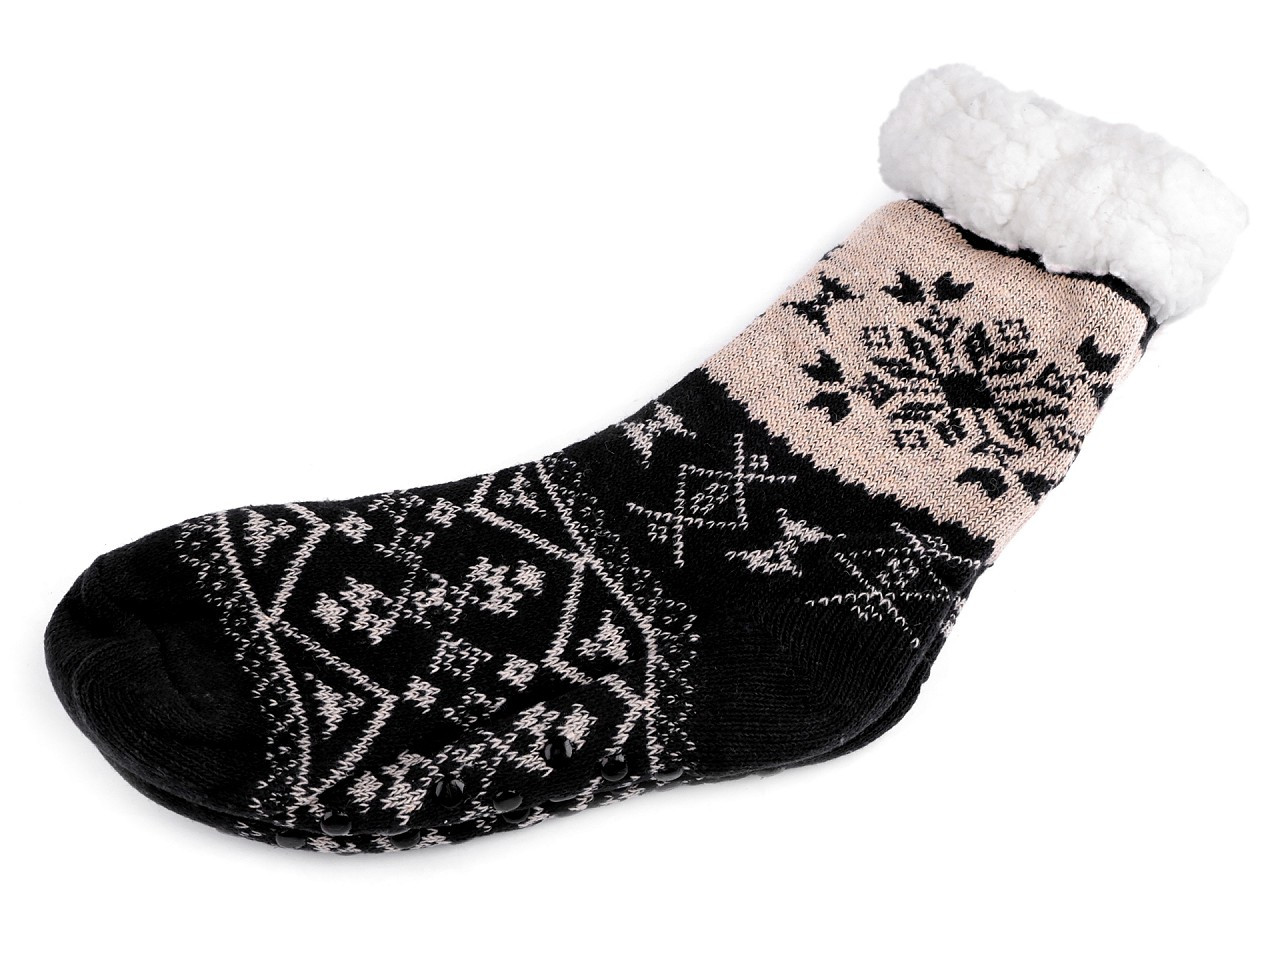 Ponožky zimní s kožíškem a protiskluzem, unisex, barva 19 (vel. 35-38) modrá tmavá